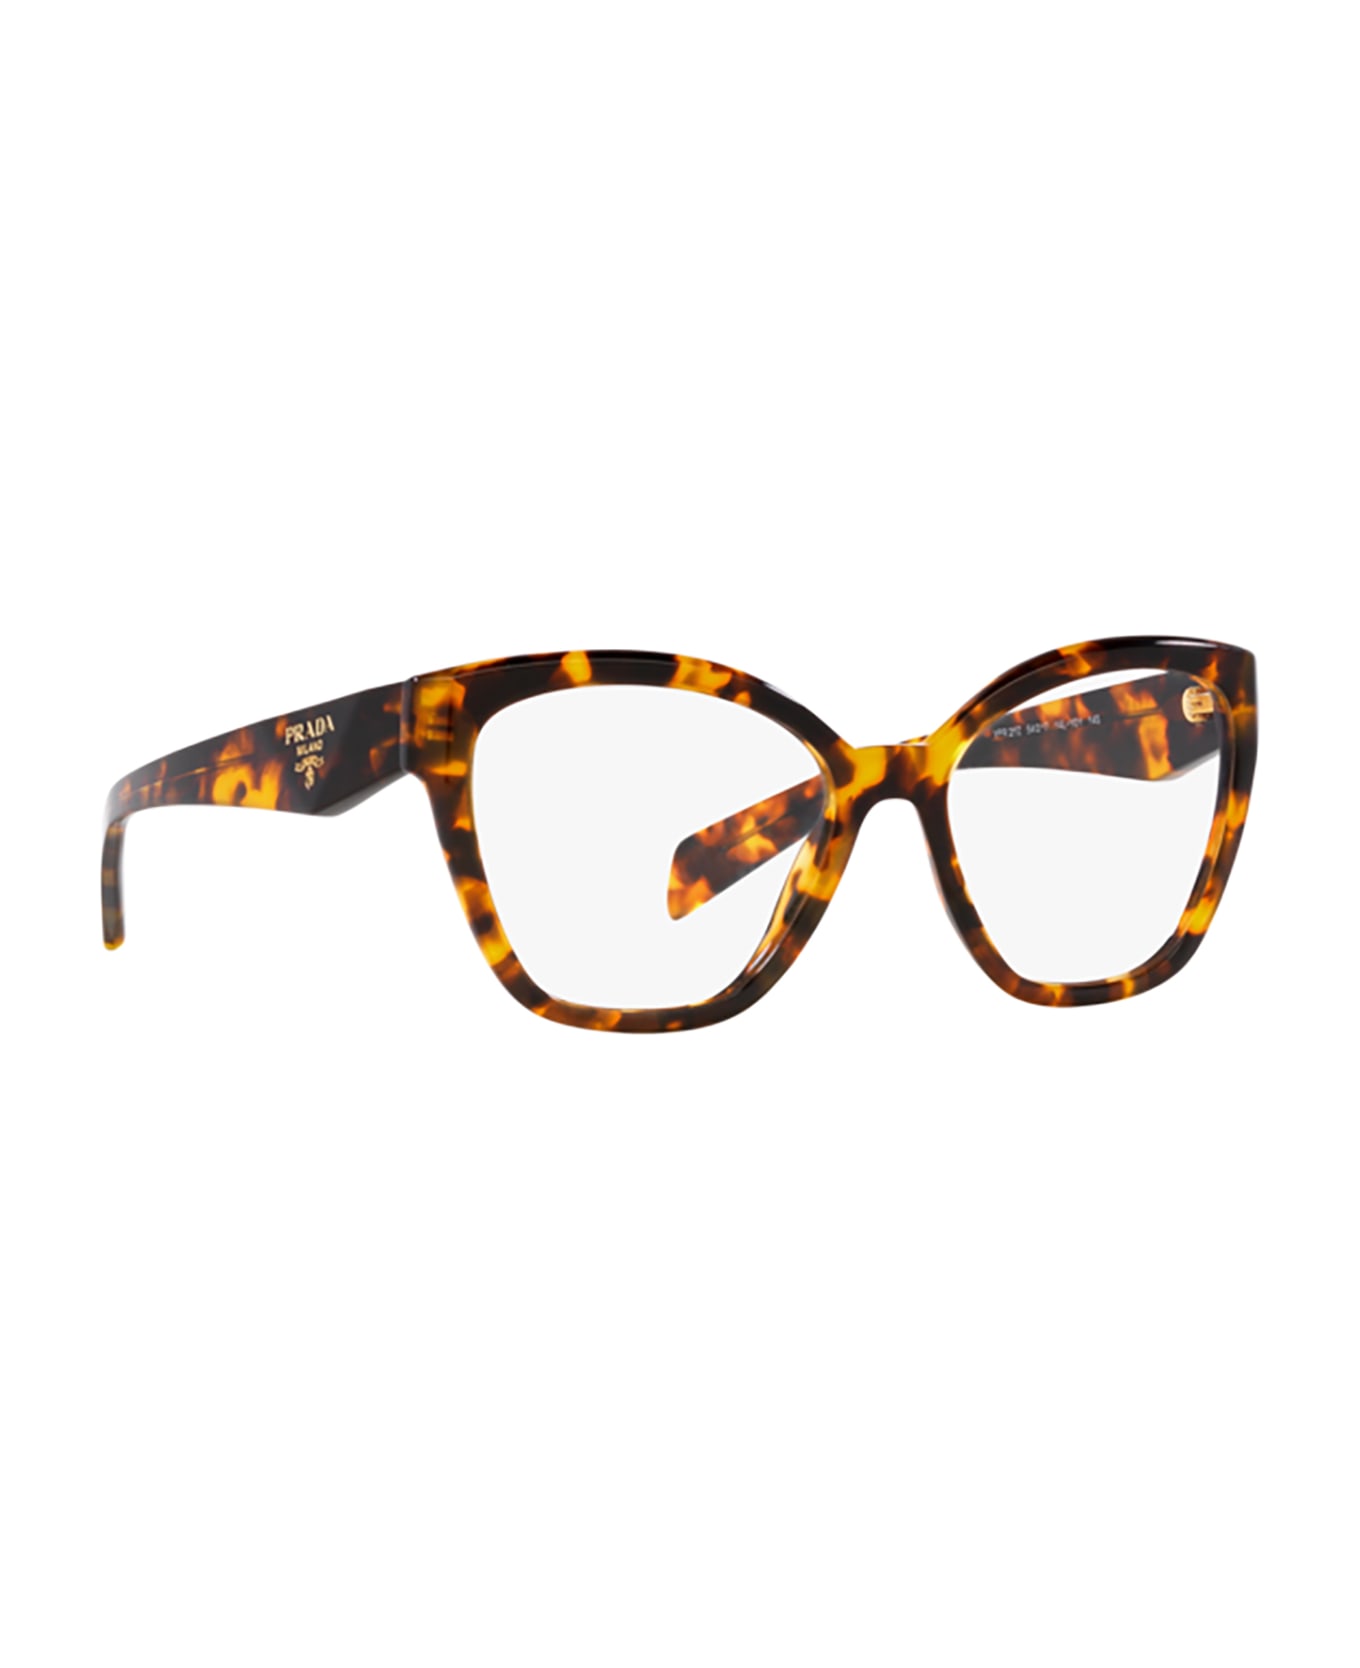 Prada Eyewear Pr 20zv Honey Tortoise Glasses - Honey Tortoise